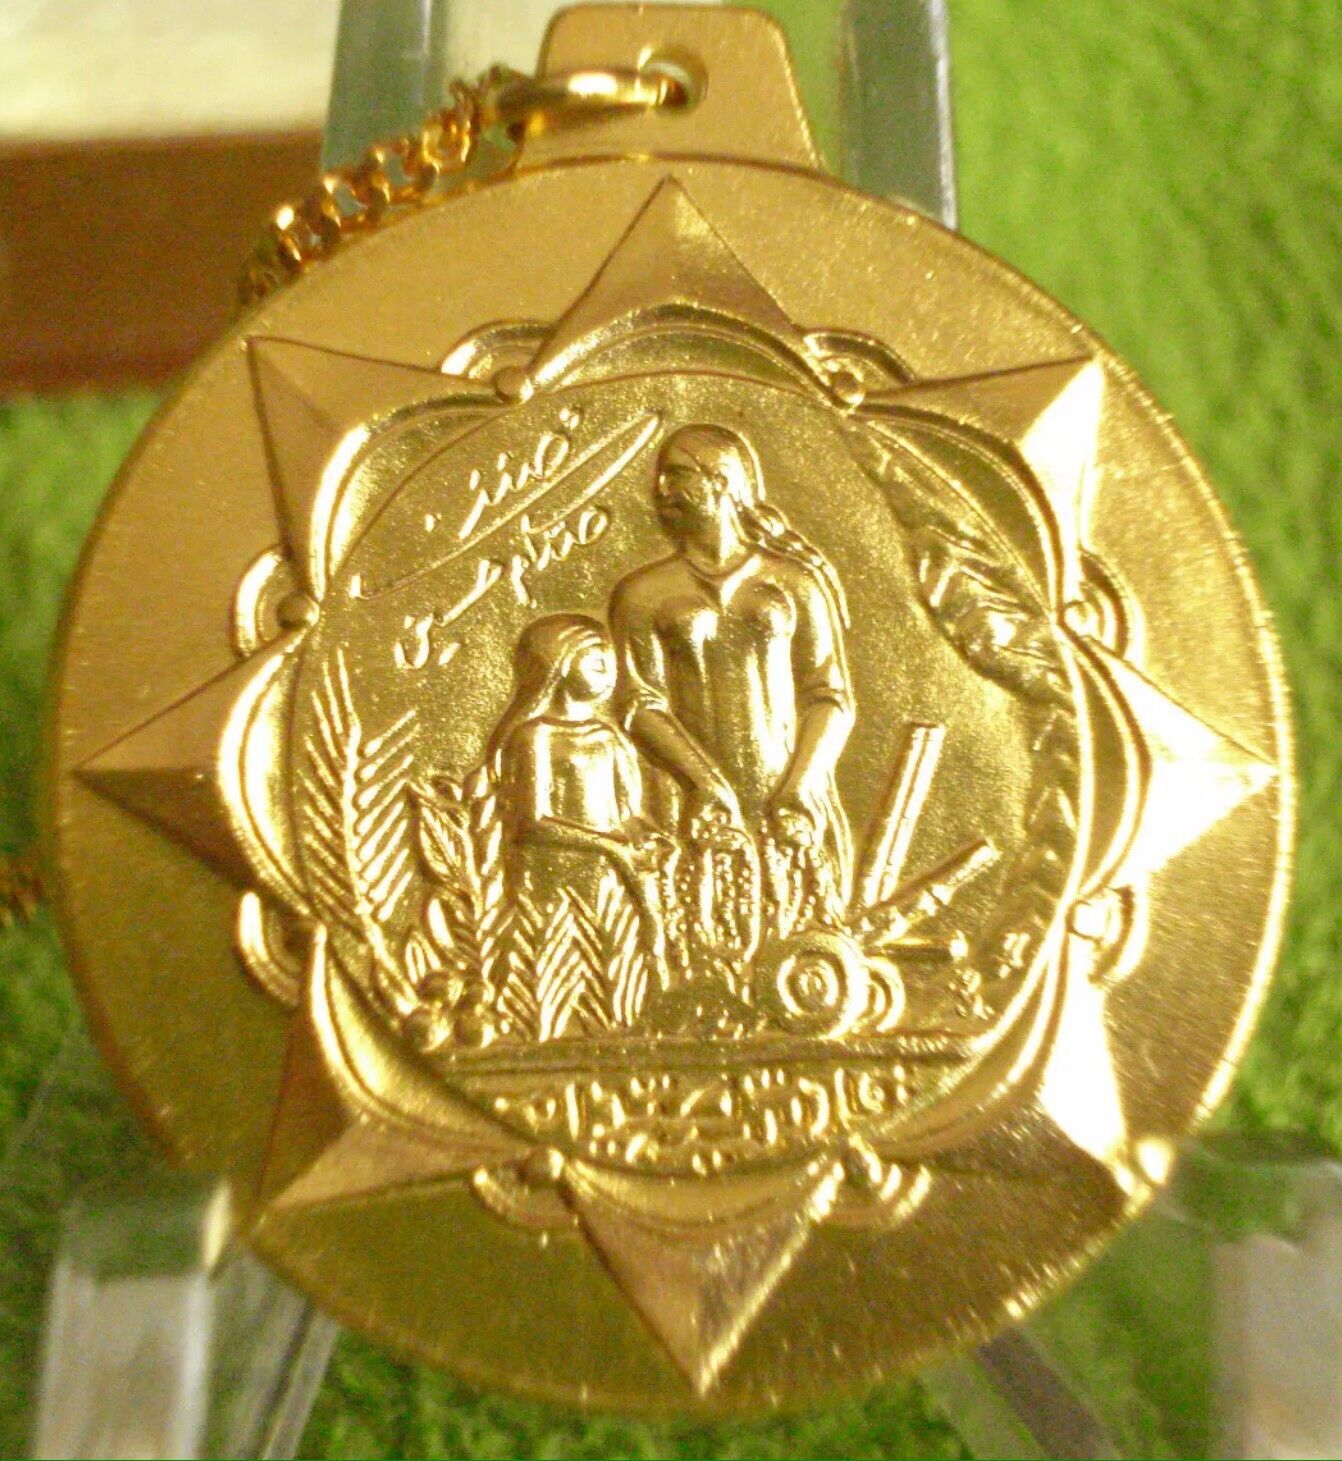 IRAQ-IRAQI Medal Of Honor 1983 1st Gulf War, Saddam Hussein Signature, MINT